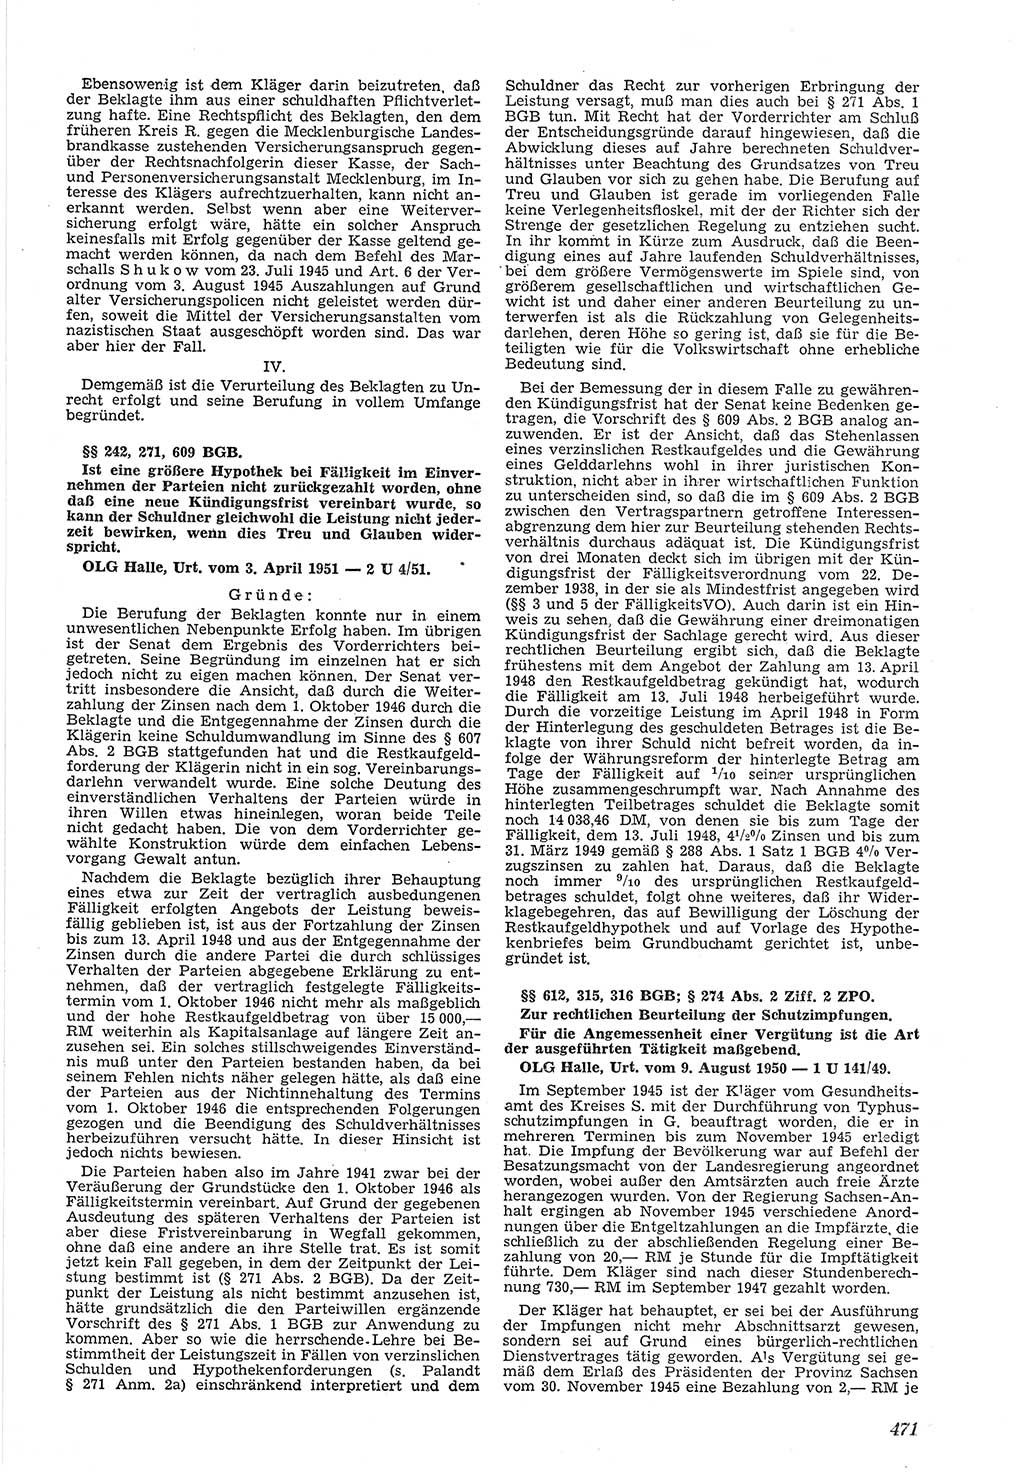 Neue Justiz (NJ), Zeitschrift für Recht und Rechtswissenschaft [Deutsche Demokratische Republik (DDR)], 5. Jahrgang 1951, Seite 471 (NJ DDR 1951, S. 471)